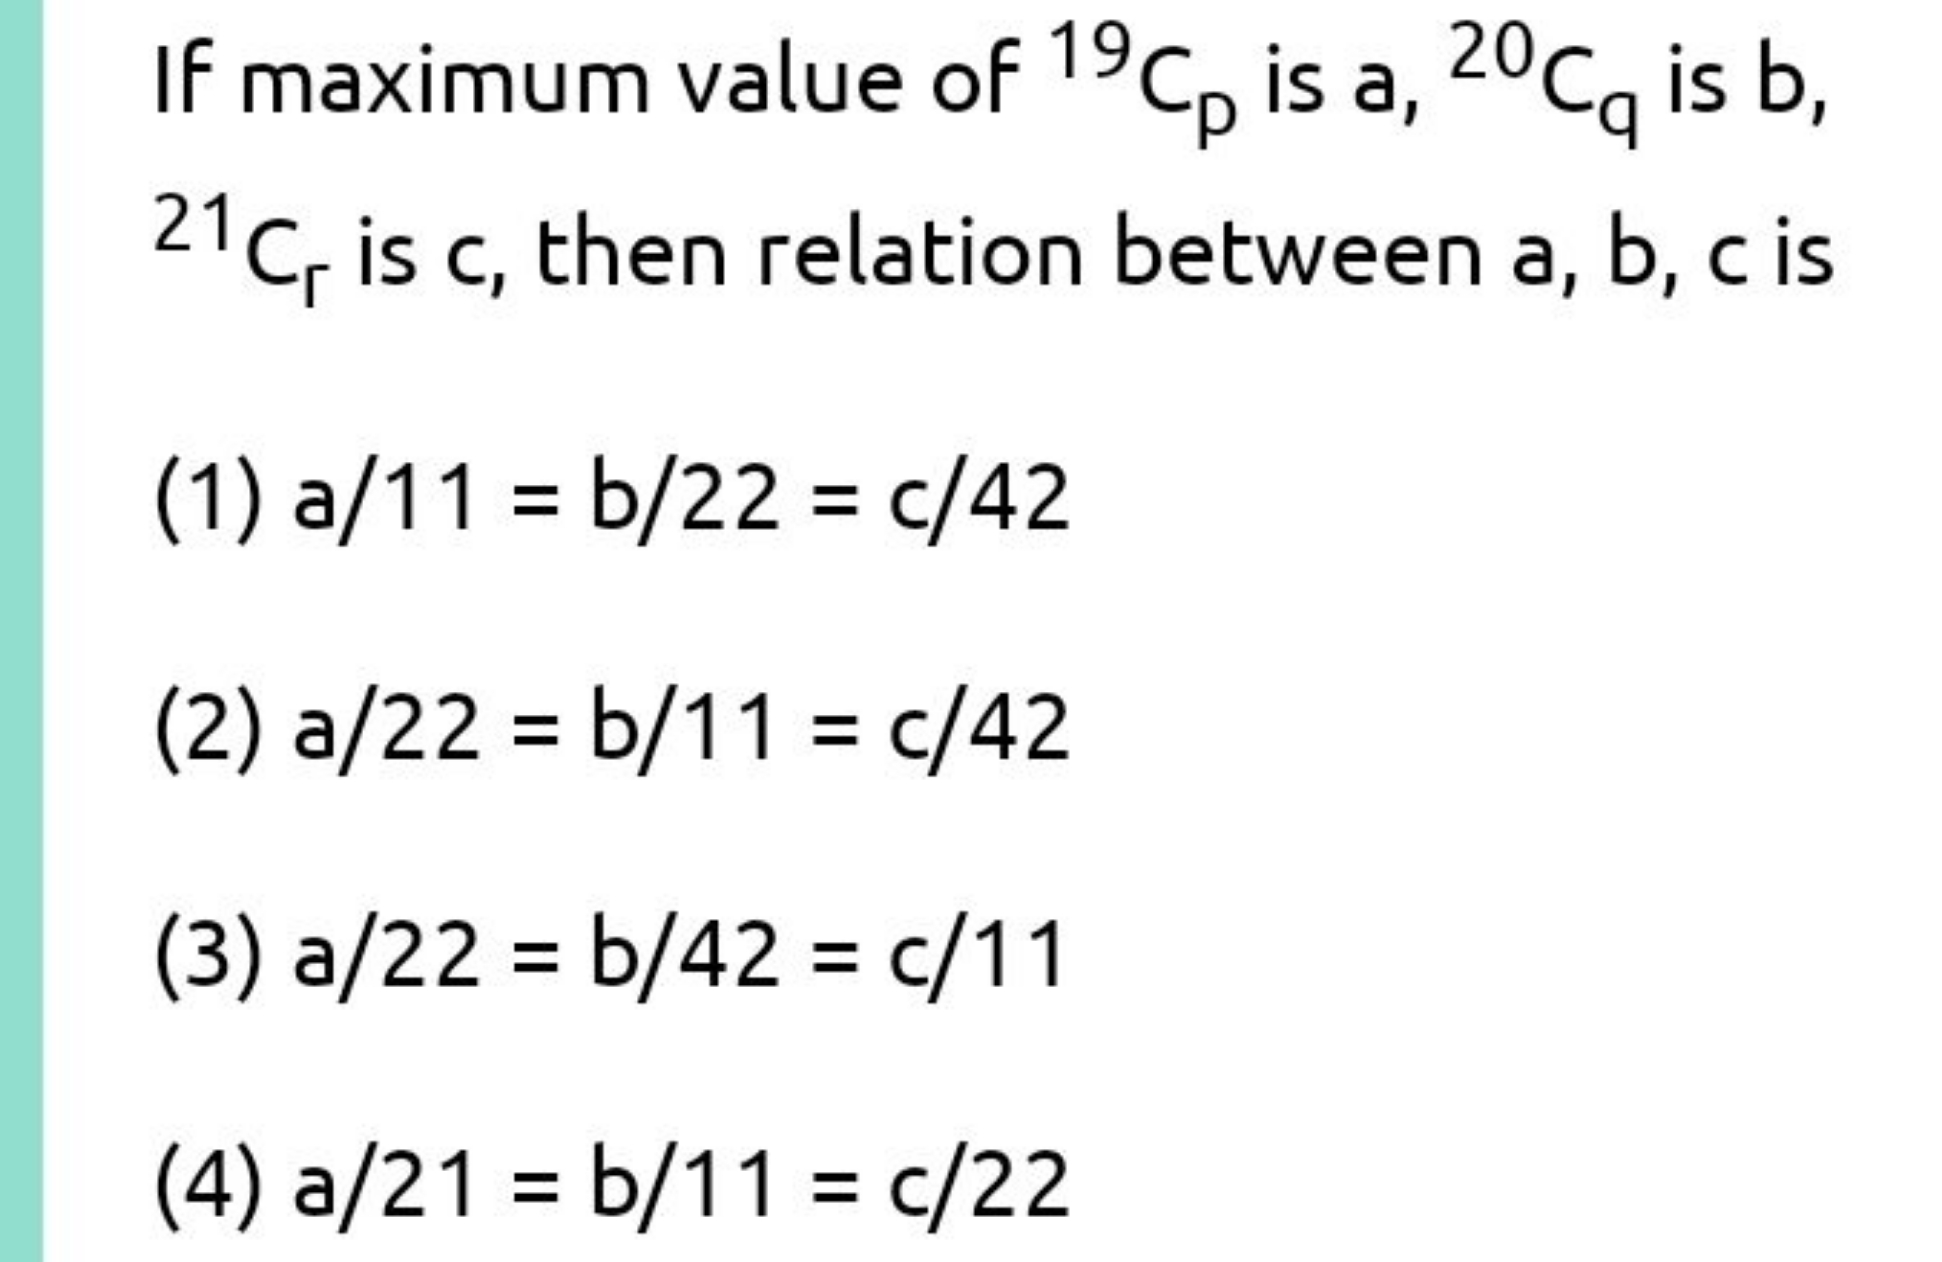 If maximum value of 19Cp​ is 2020Cq​ is b, 21Cr​ is c, then relation b